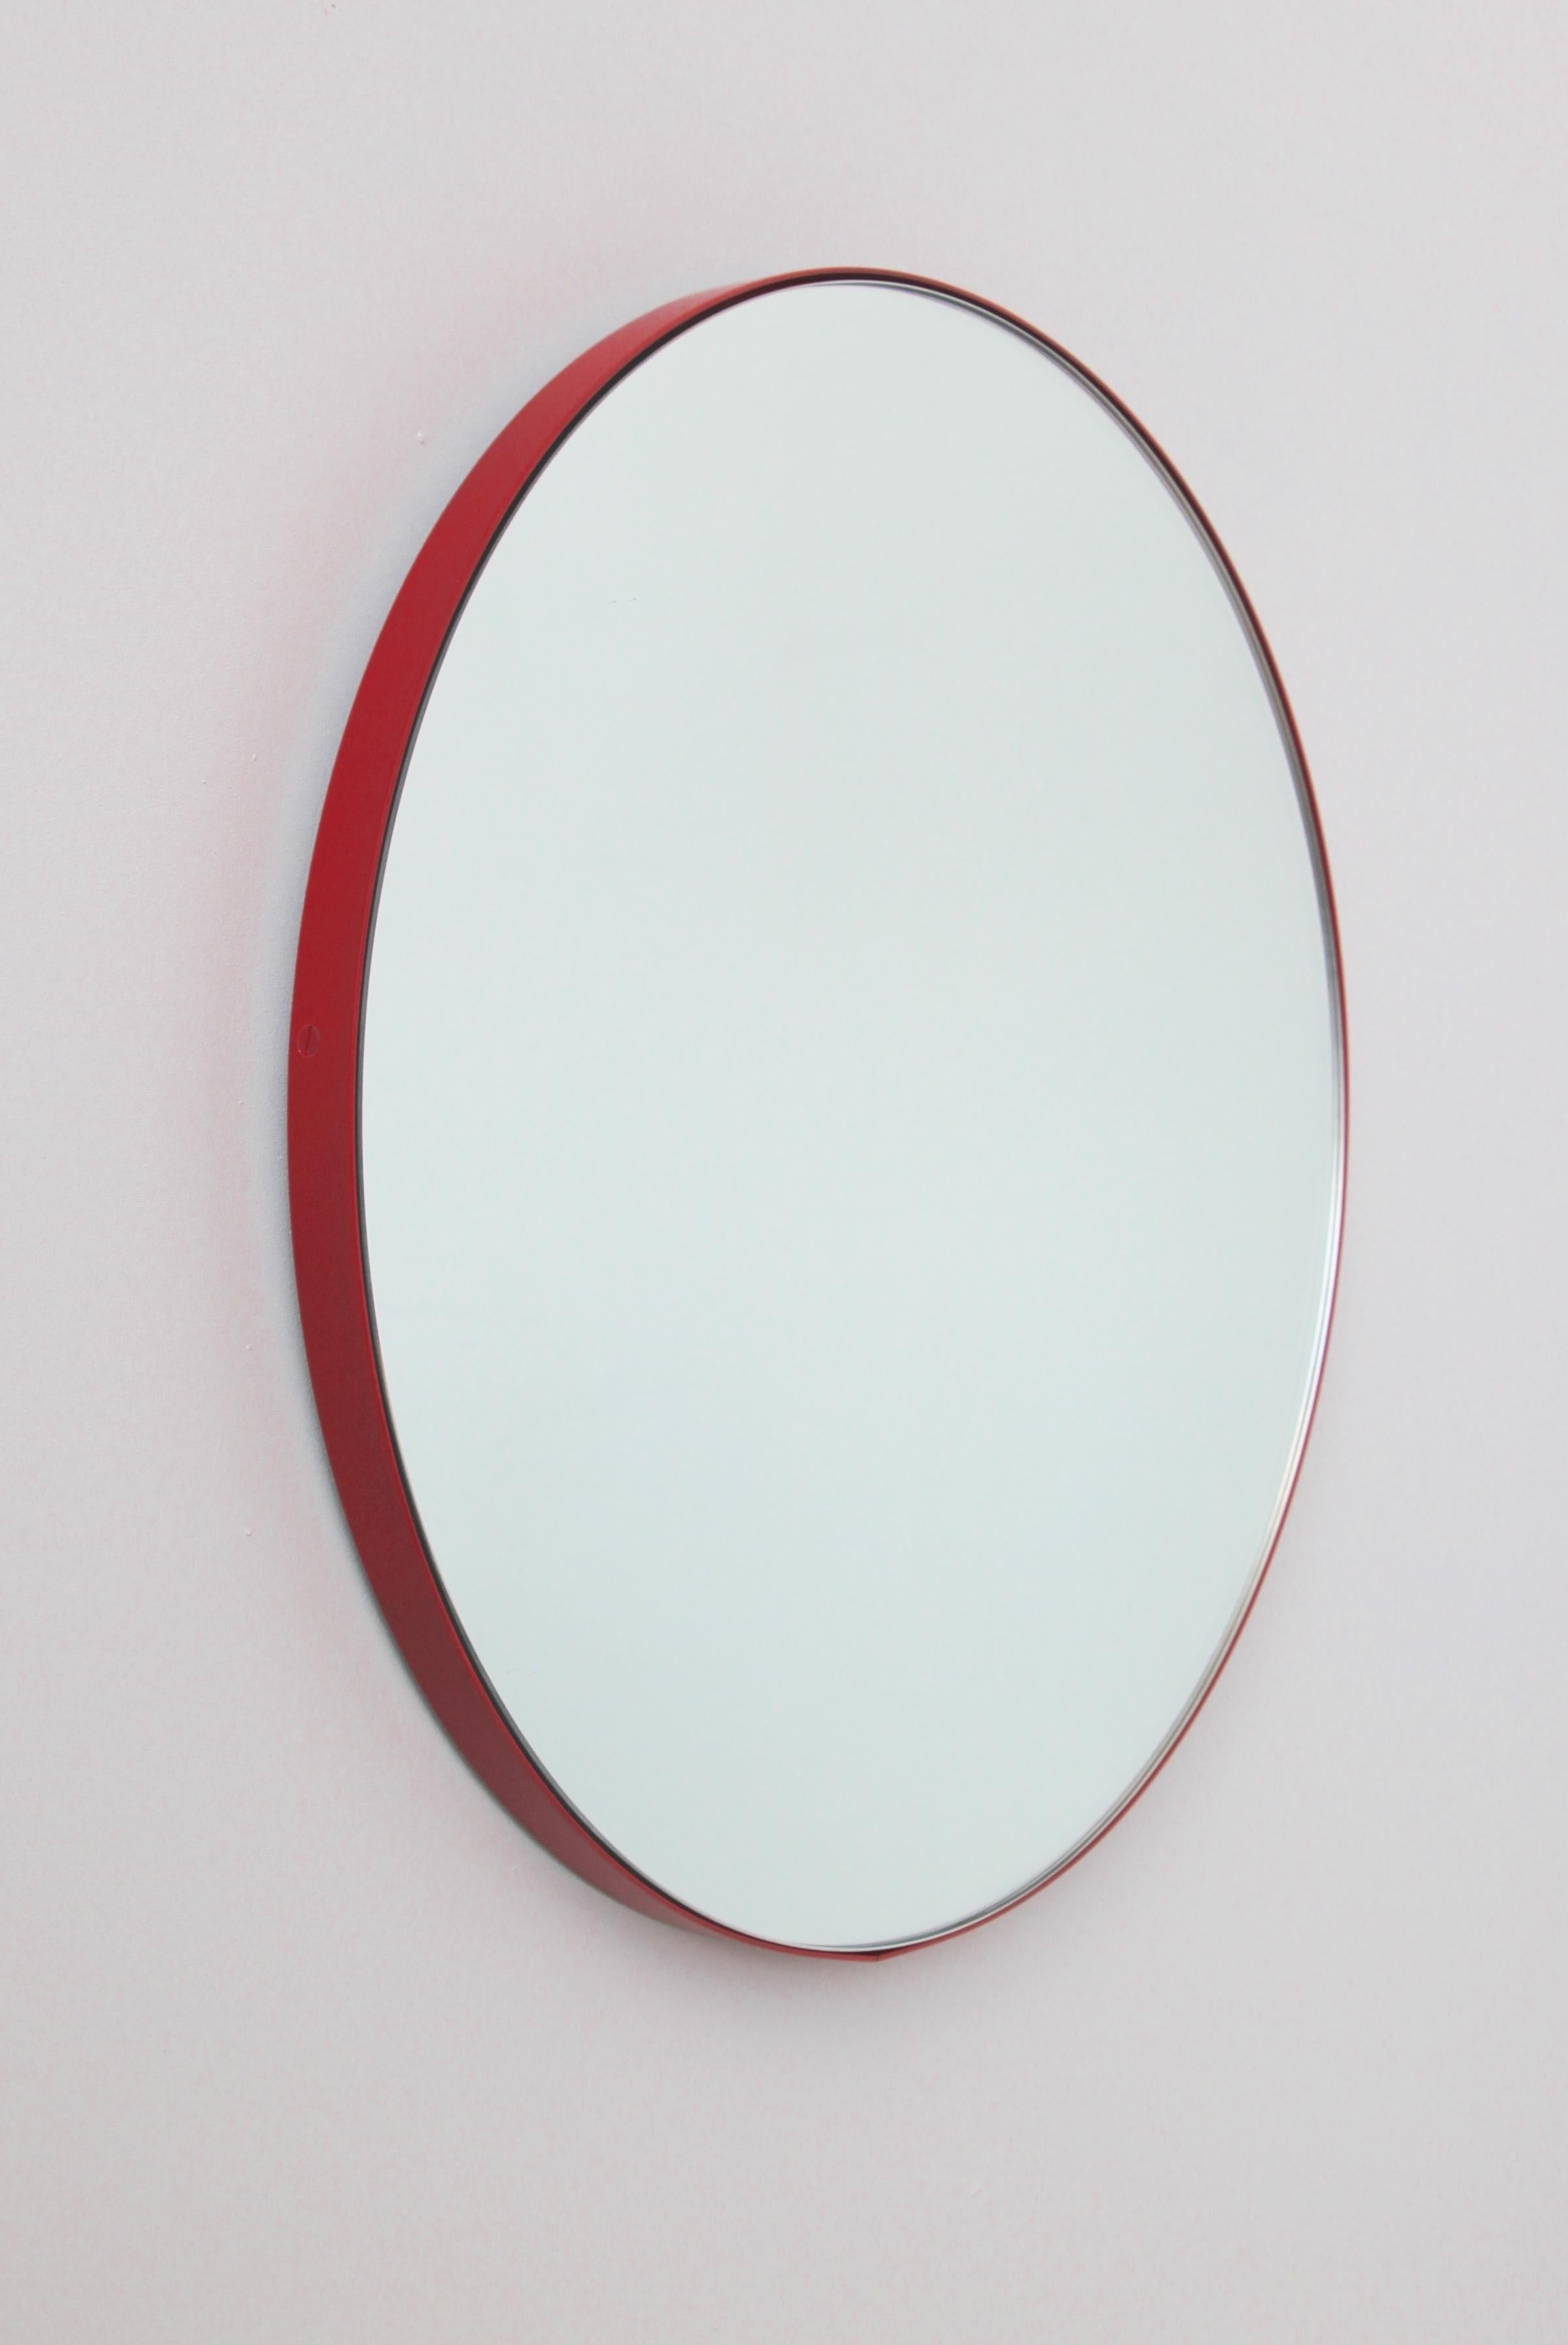 Orbis Round Minimalist Mirror with Red Frame, Medium For Sale 1